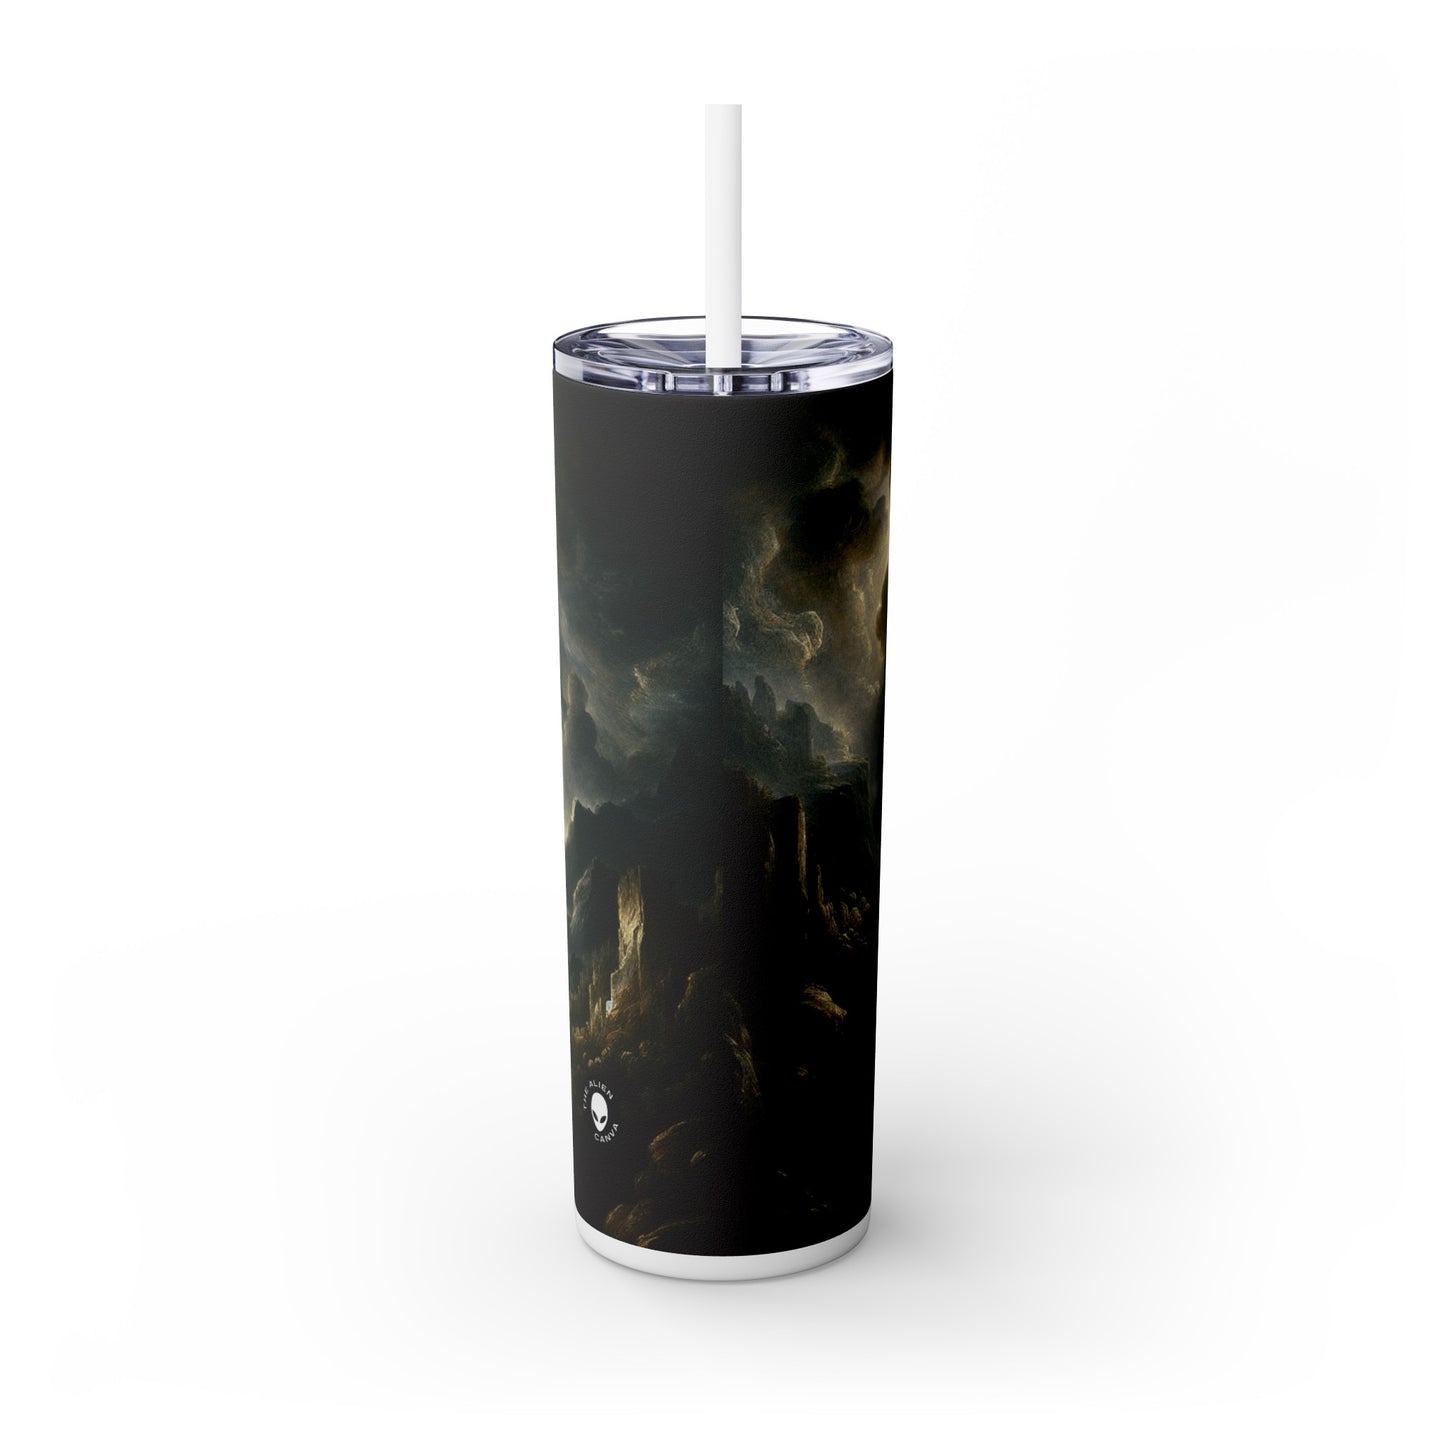 "Sombras solemnes: un retrato de tenebrismo" - El vaso delgado con pajita de Alien Maars® Tenebrismo de 20 oz